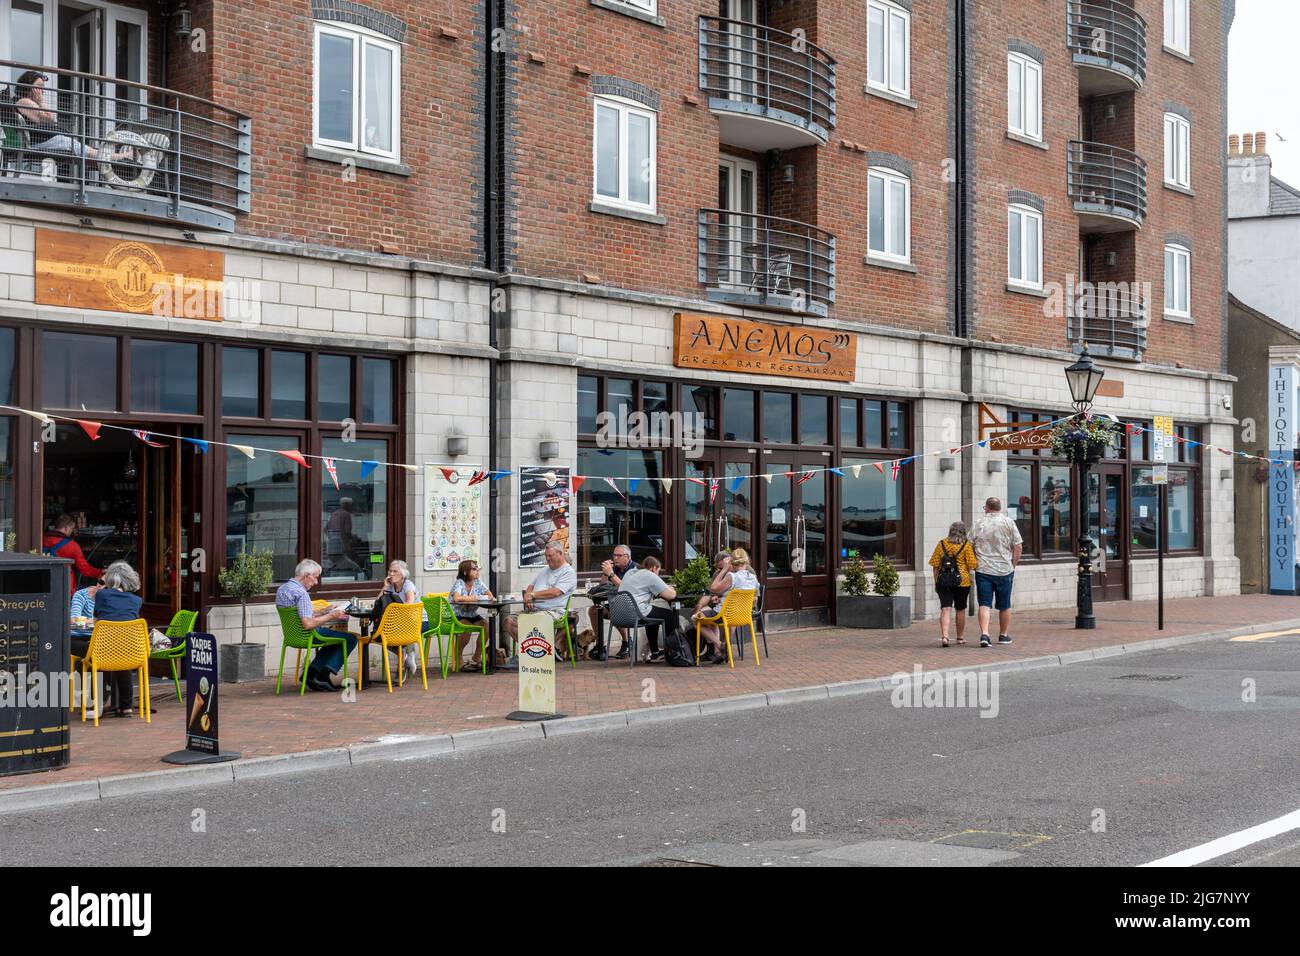 Dîner en plein air à l'extérieur du glacier et restaurant grec sur Poole Quay, Poole, Dorset, Angleterre, Royaume-Uni Banque D'Images